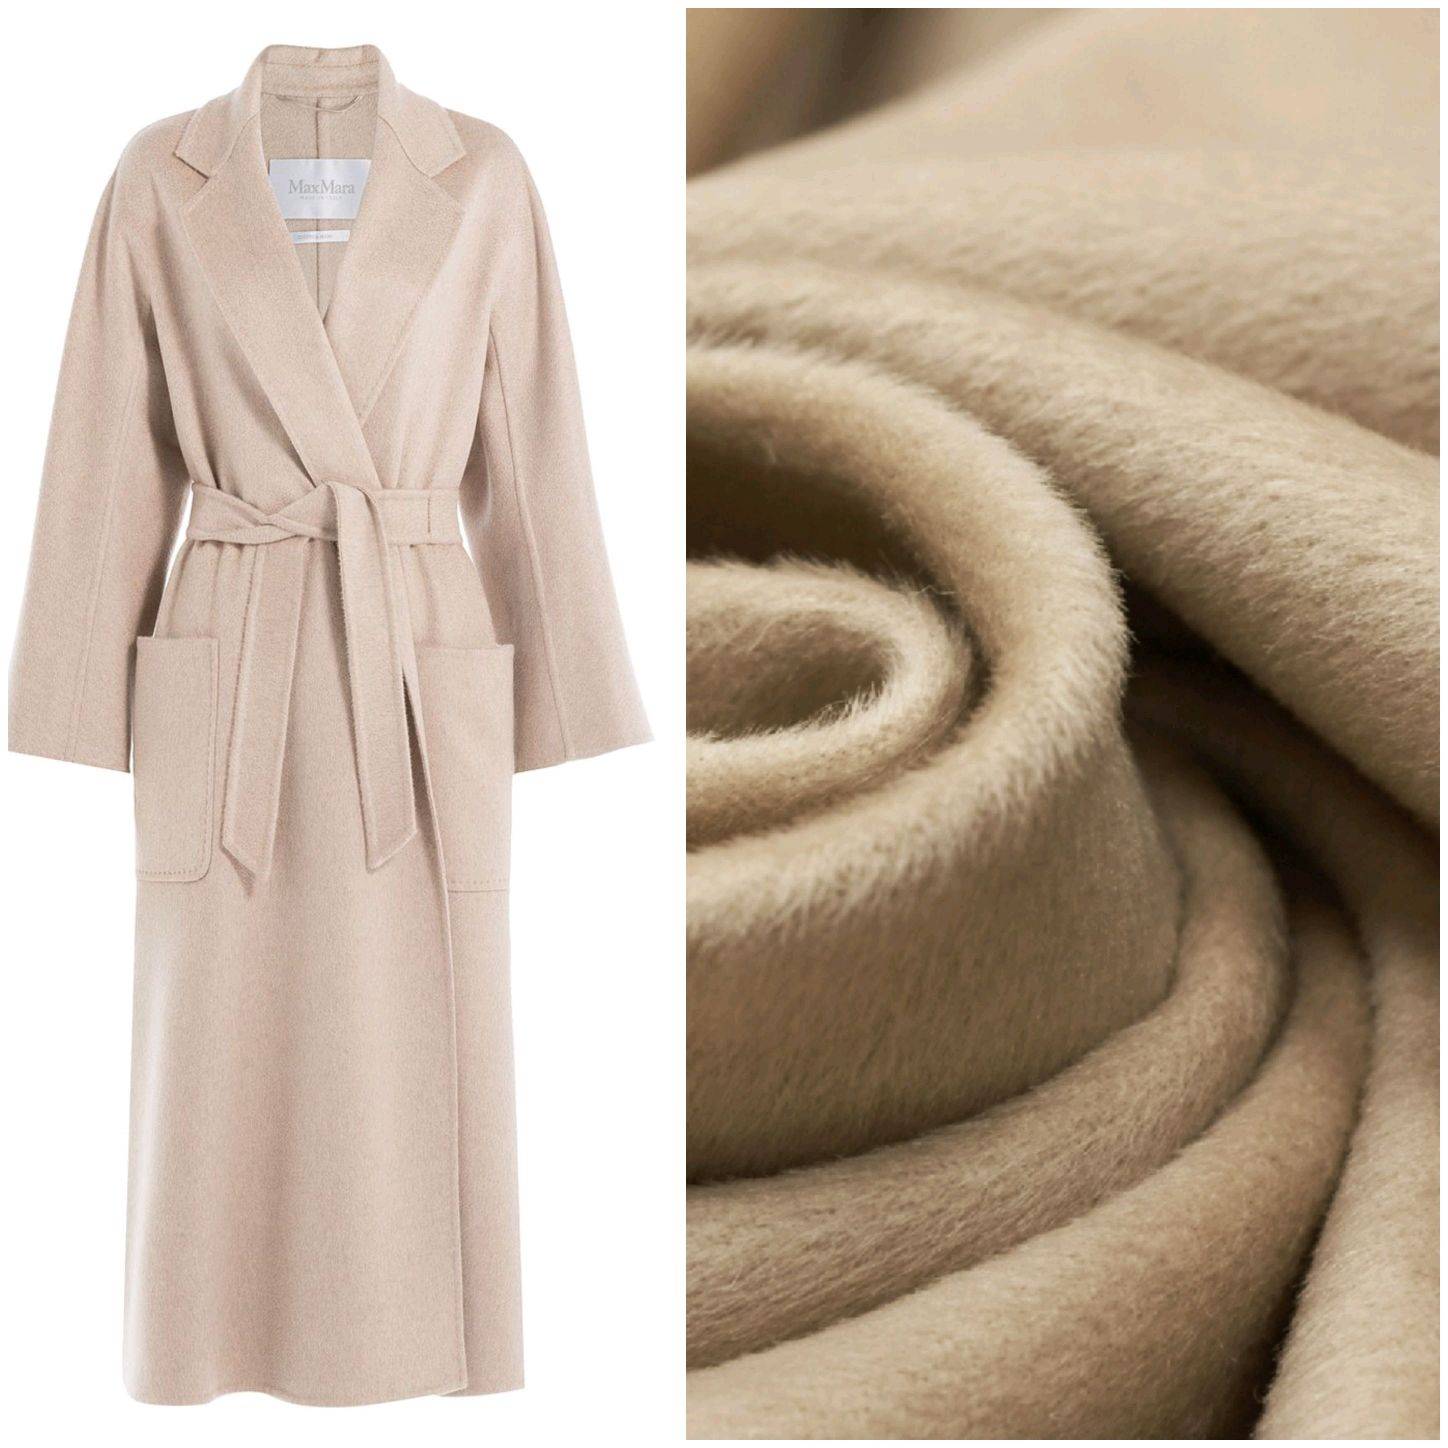 Ткань для пальто: из чего шьют зимнюю и демисезонную верхнюю одежду, какой материал лучше выбрать?